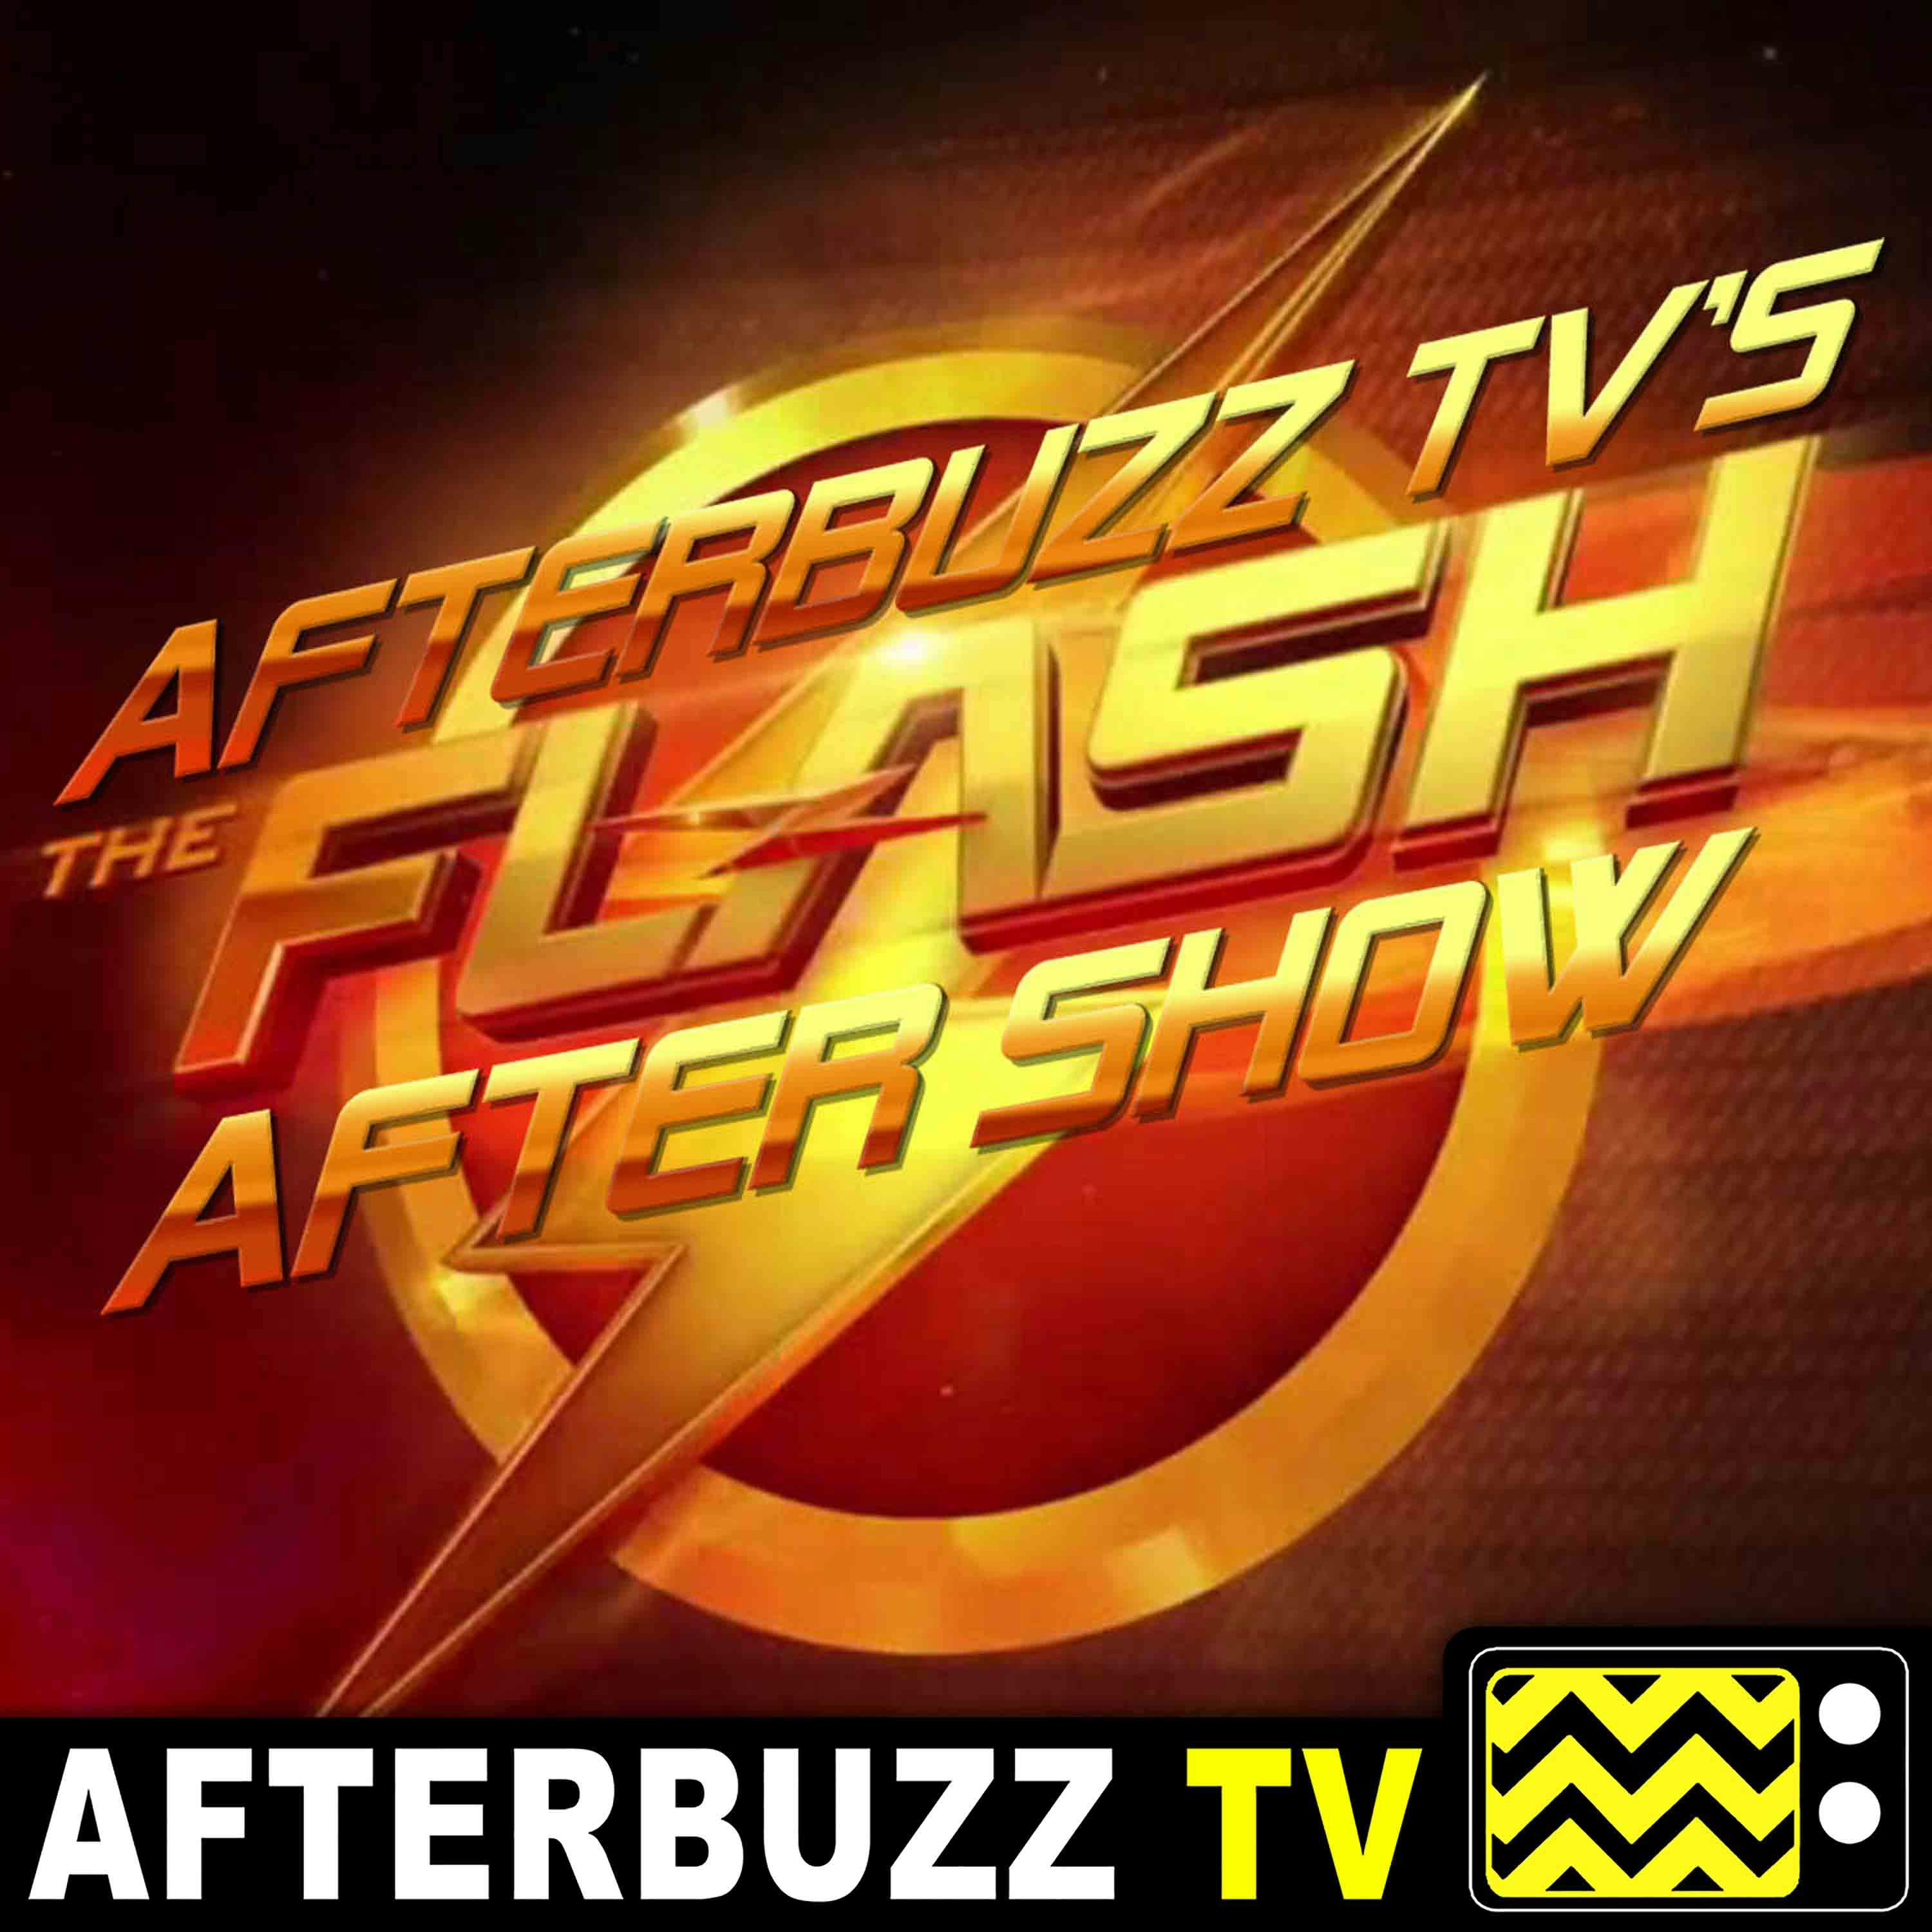 "The Last Temptation of Barry Allen Part 1" Season 6 Episode 7 'The Flash' Review